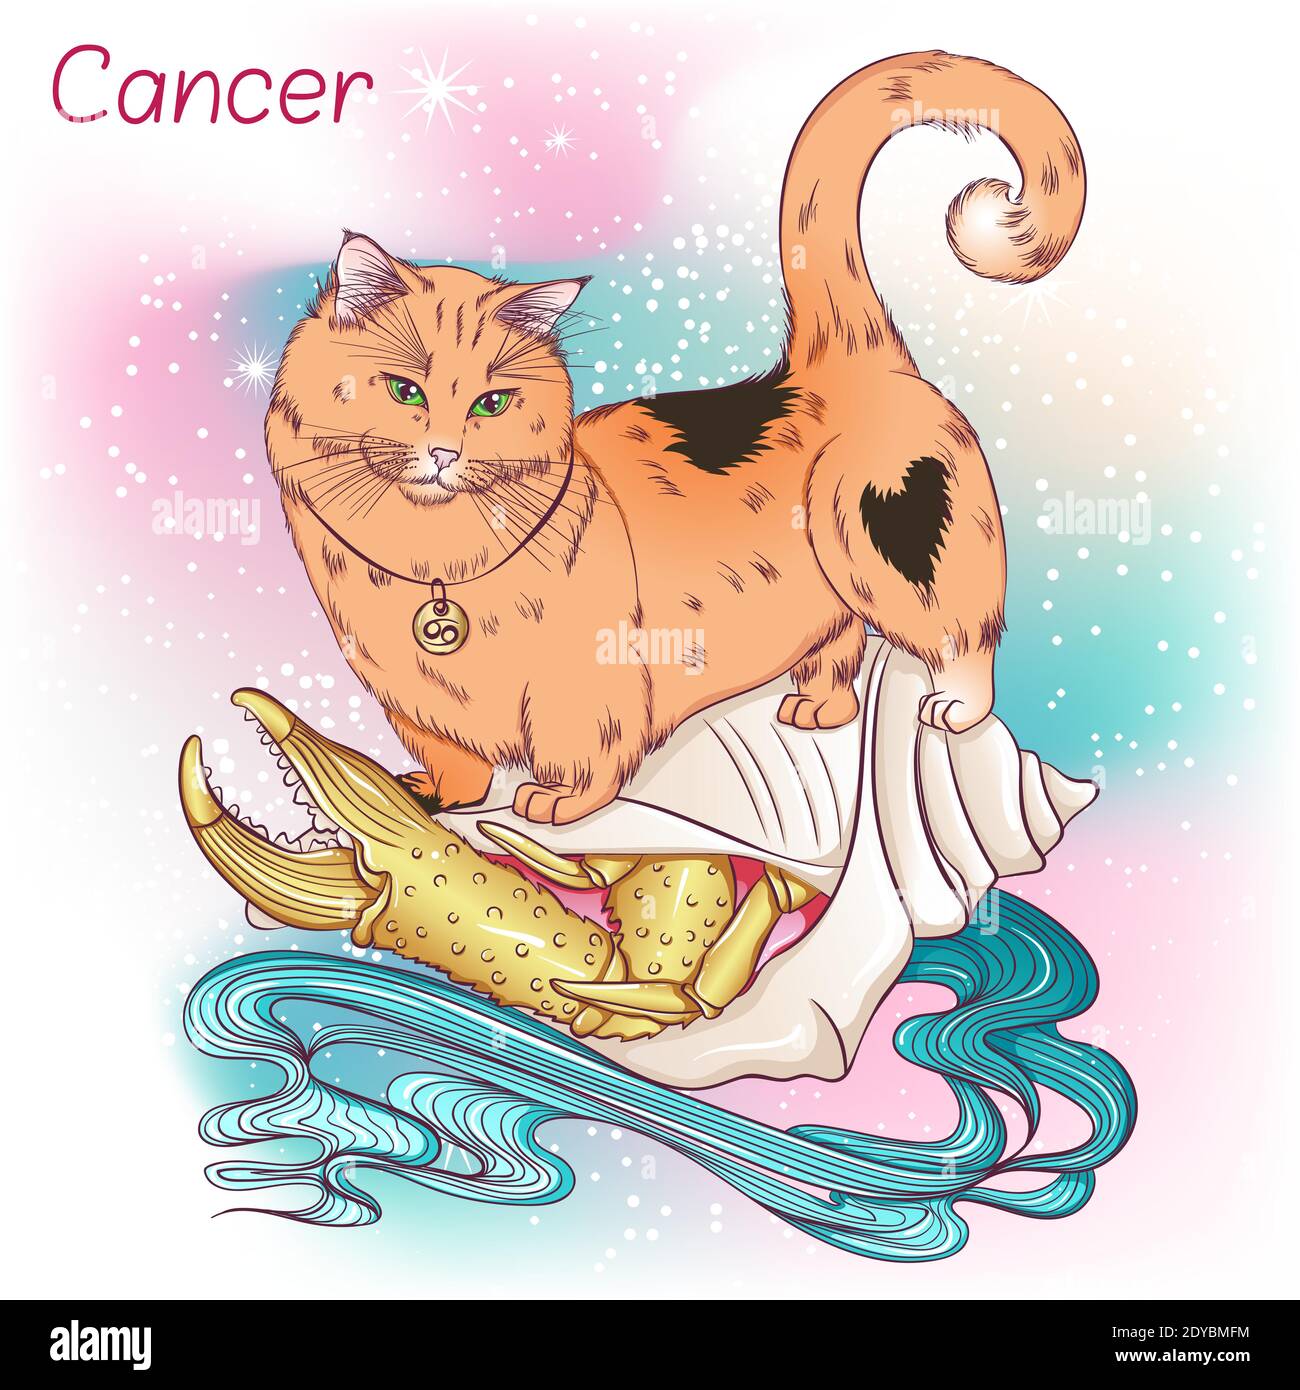 Zodiaco. Illustrazione vettoriale del segno astrologico del cancro come un gatto di razza Munchkin guardando verso il basso. Elemento astrologico dell'oroscopo. Astrologia concetto art Illustrazione Vettoriale